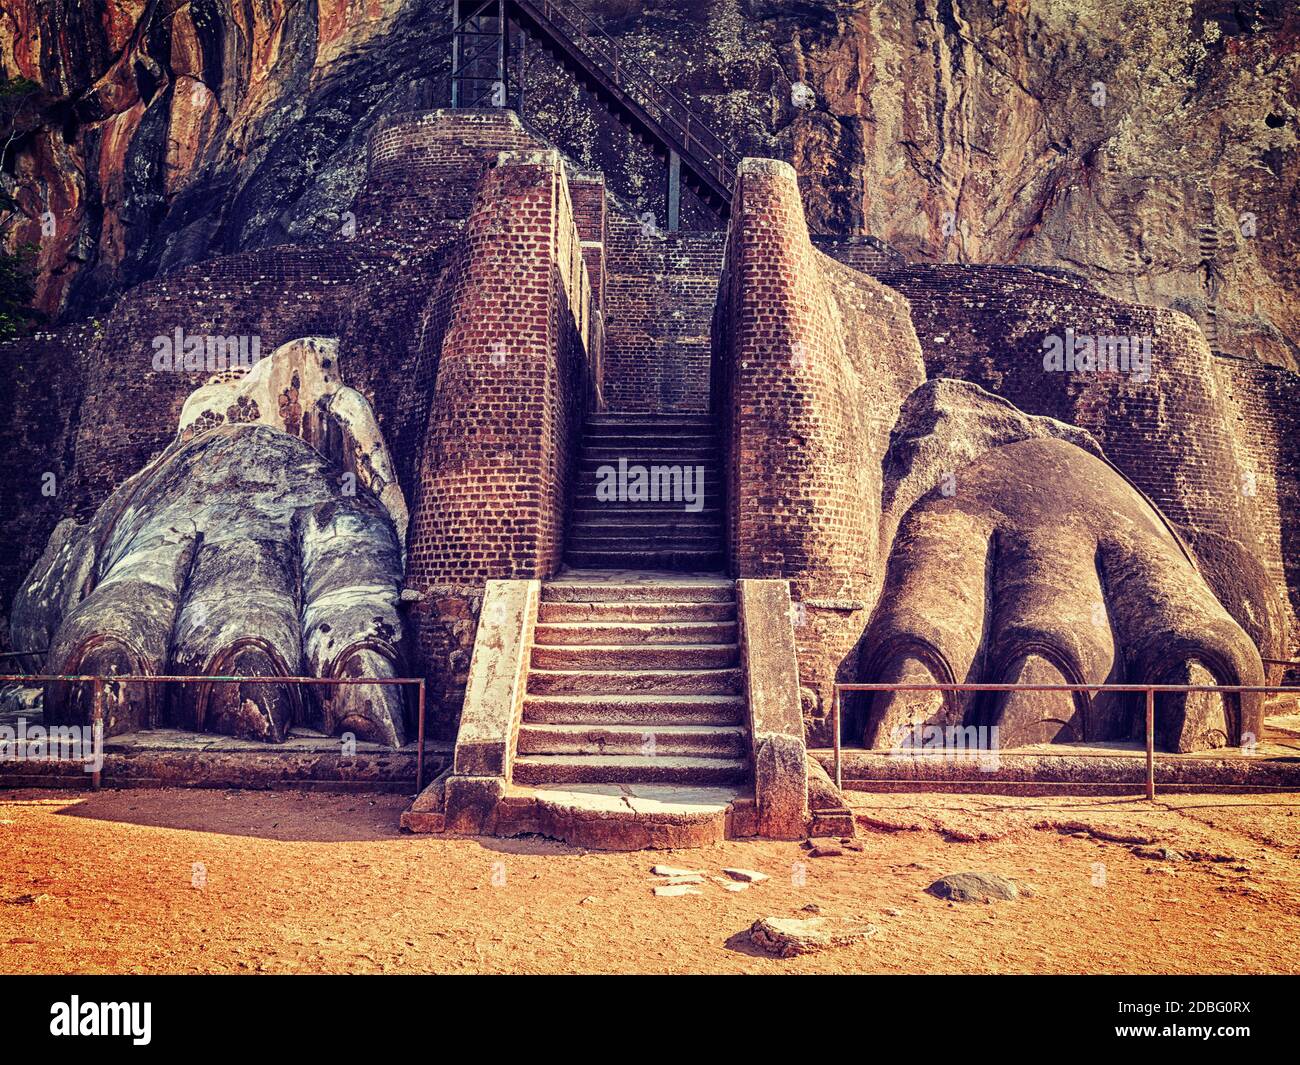 Immagine in stile hipster filtrato effetto retrò vintage del famoso punto di riferimento turistico dello Sri Lanka - percorso delle zampe di leone sulla roccia di Sigiriya, Sri Lanka Foto Stock